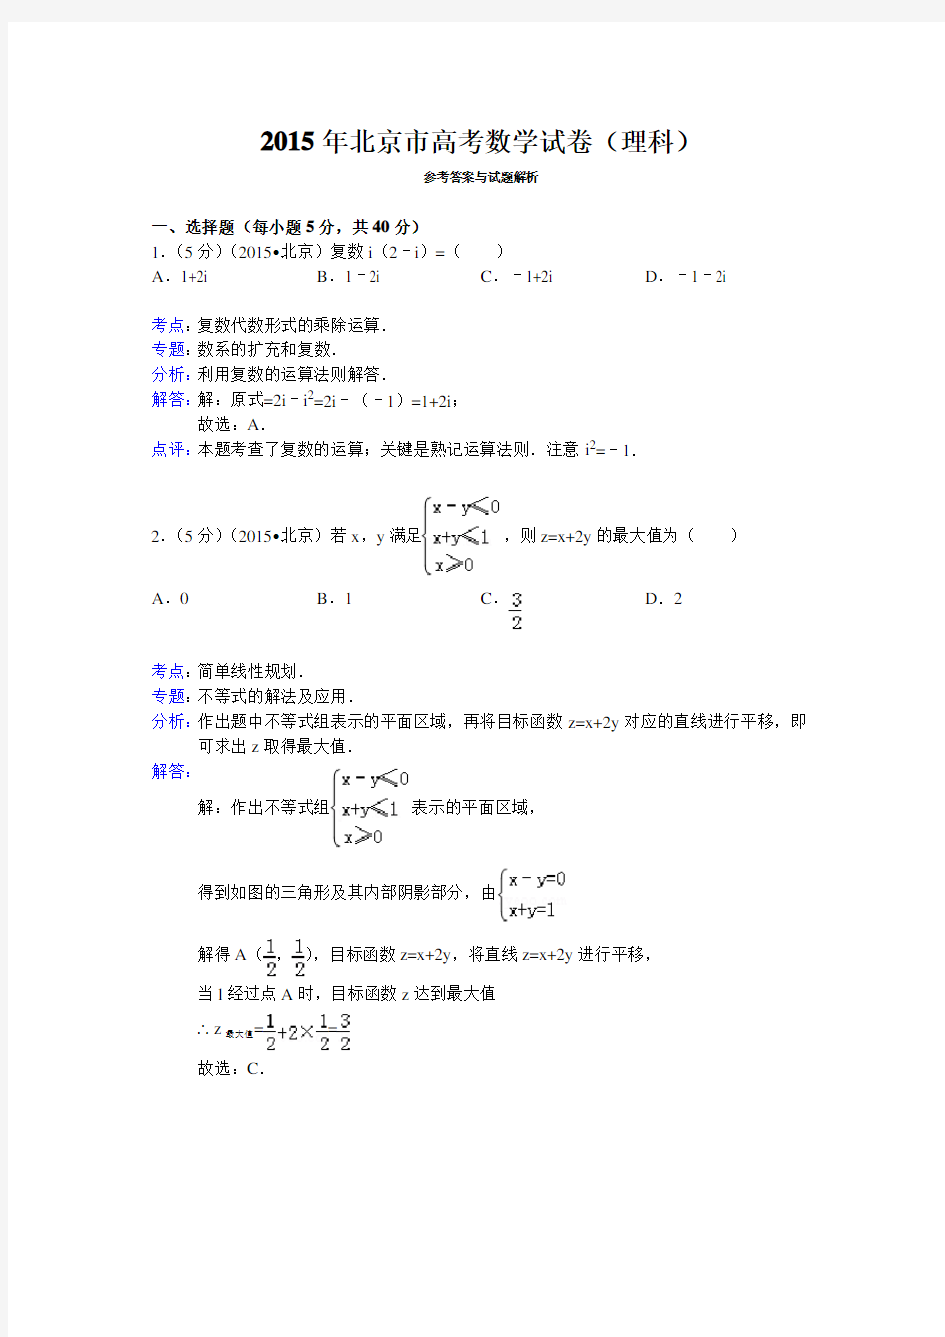 完整word版,2015年北京市高考数学试卷(理科)答案与解析